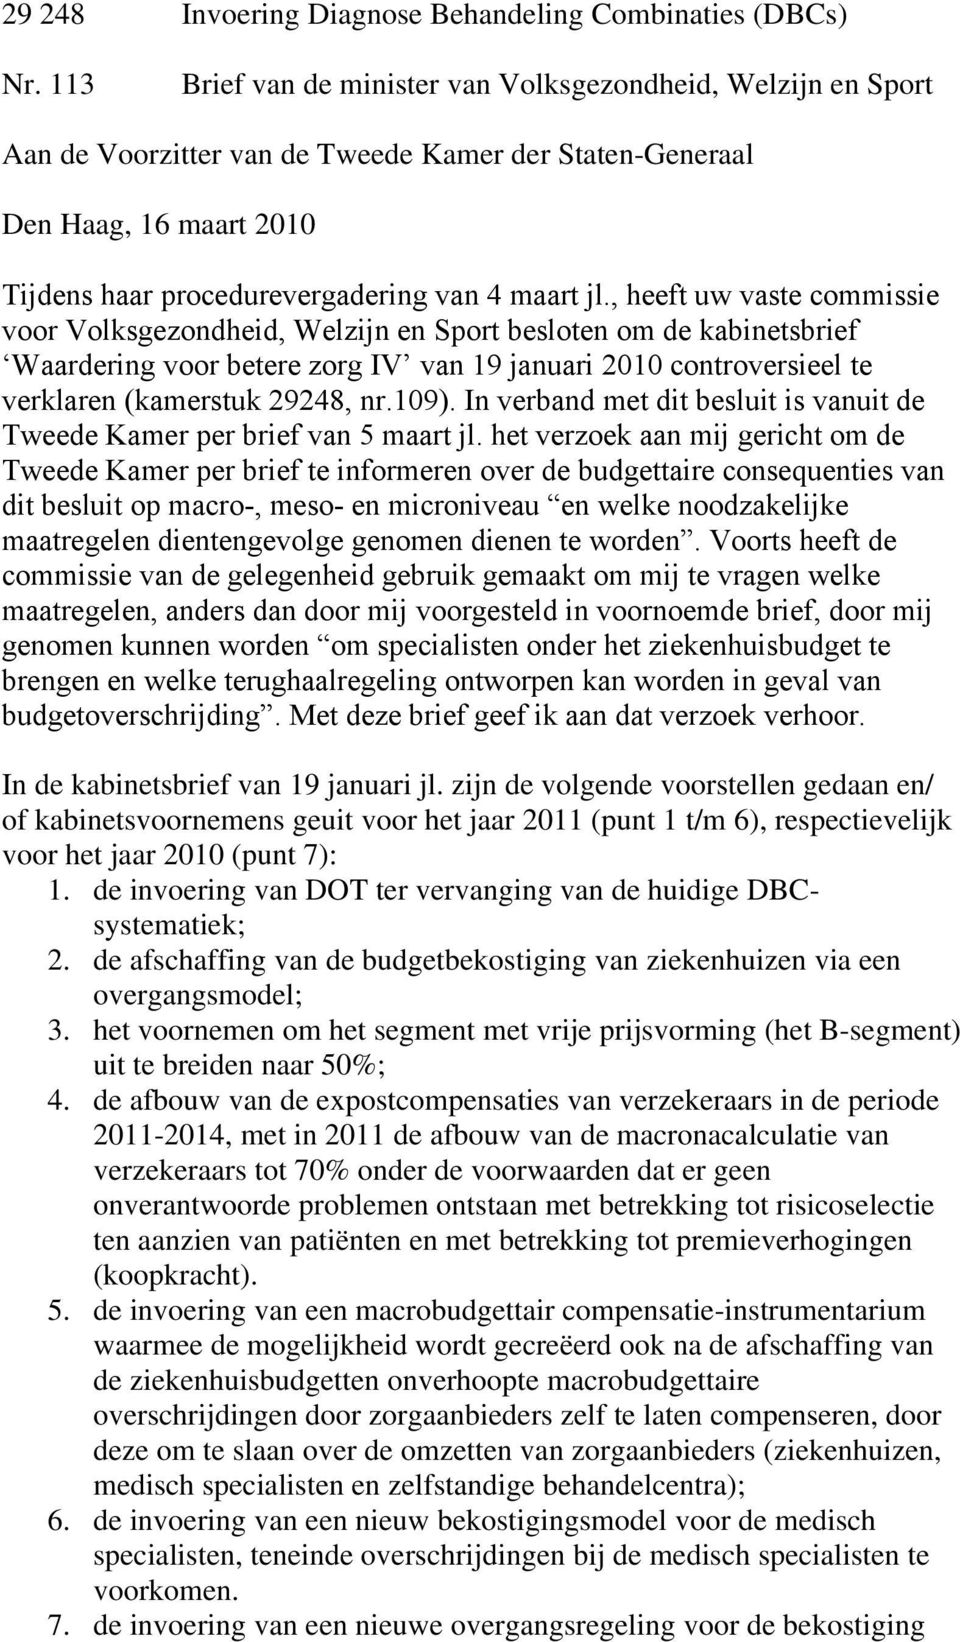 , heeft uw vaste commissie voor Volksgezondheid, Welzijn en Sport besloten om de kabinetsbrief Waardering voor betere zorg IV van 19 januari 2010 controversieel te verklaren (kamerstuk 29248, nr.109).